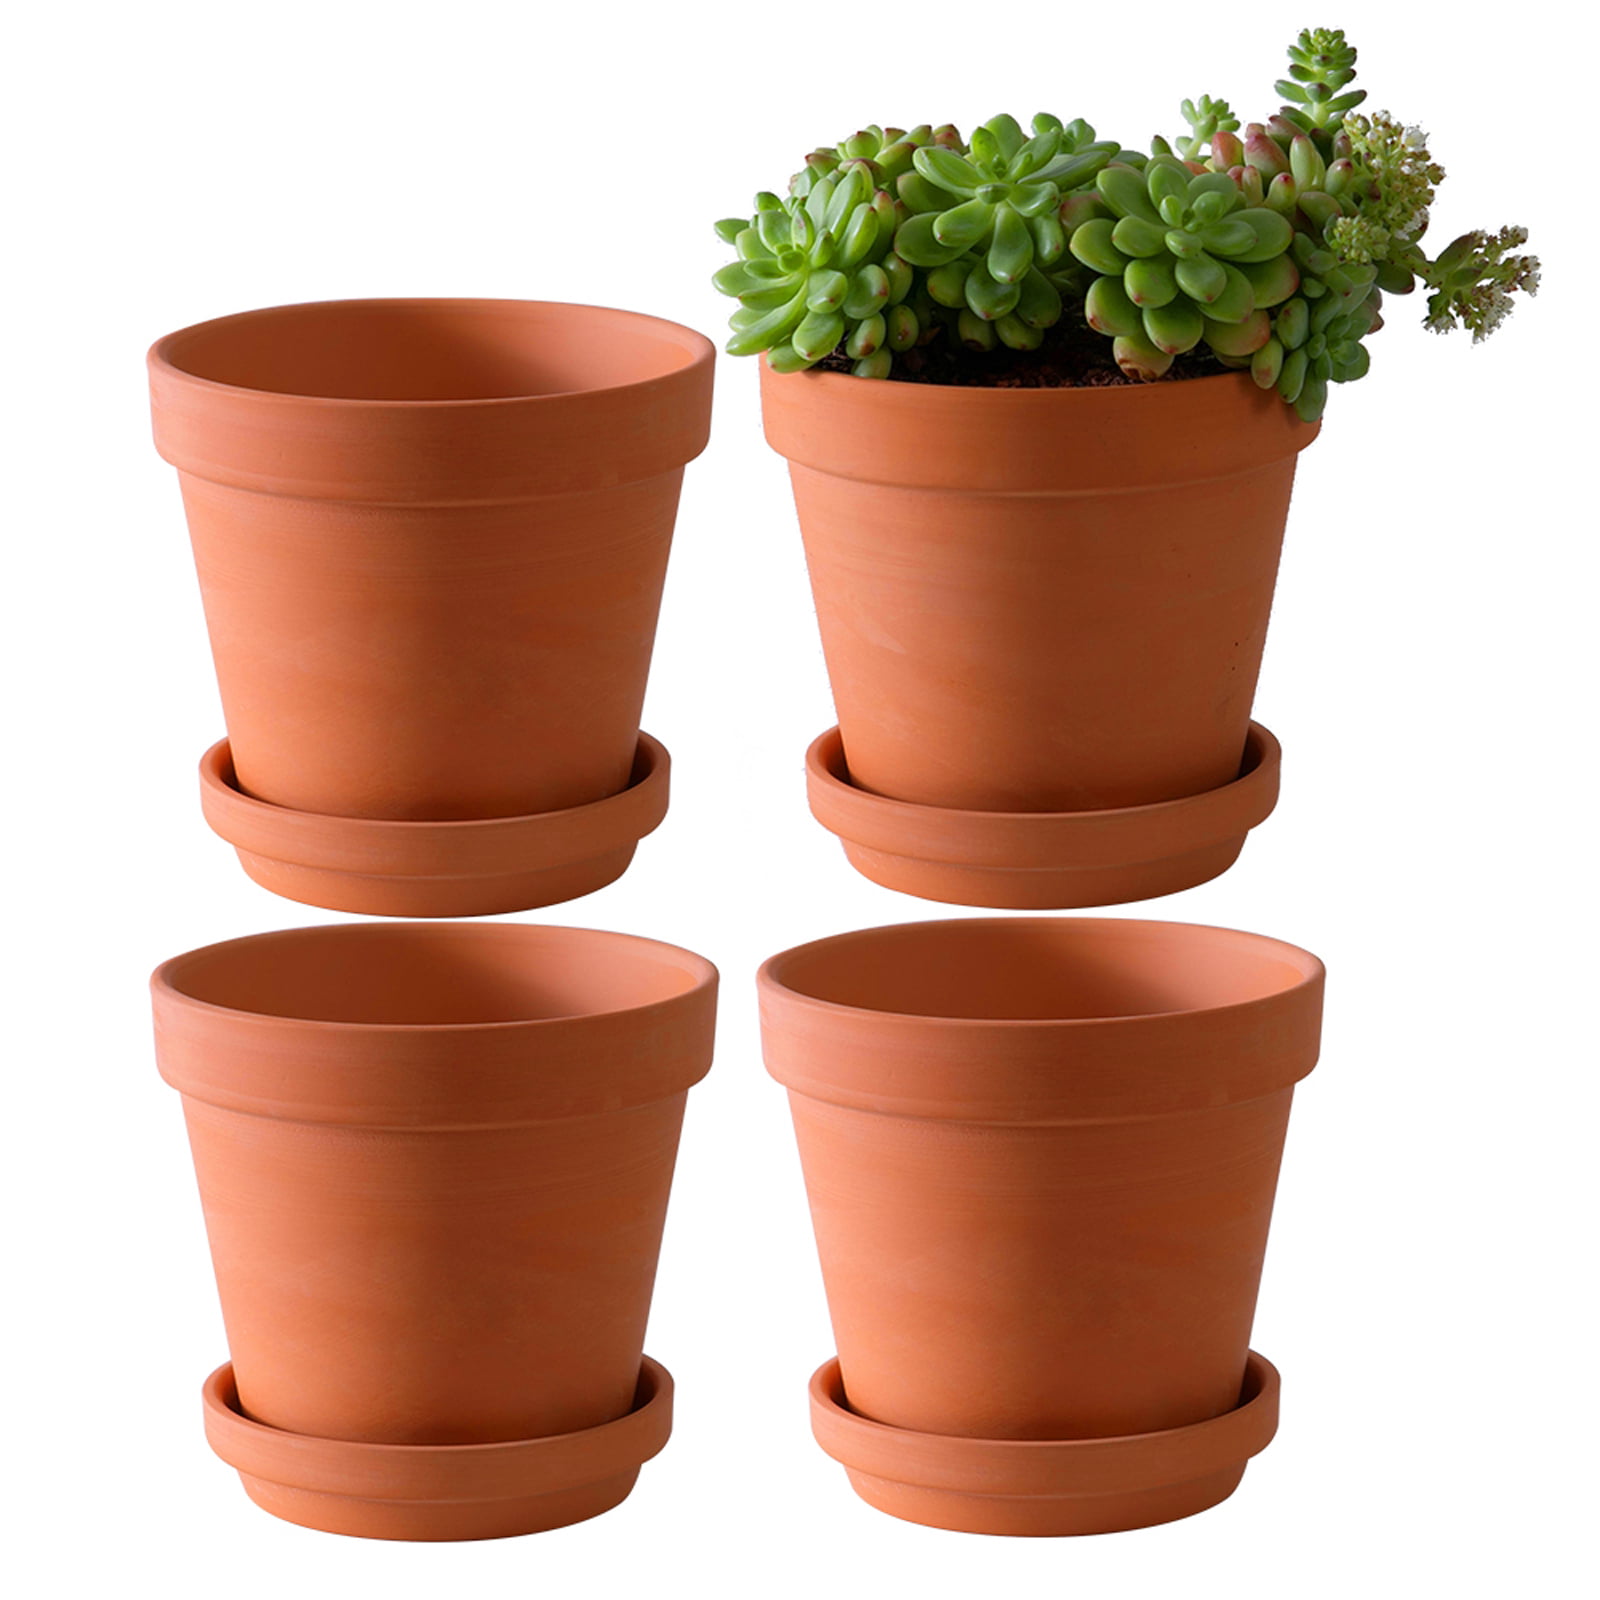 Terracotta Clay Cactus Succulent Indoor Garden Flower Planter Bowl 6 Pack Pots 